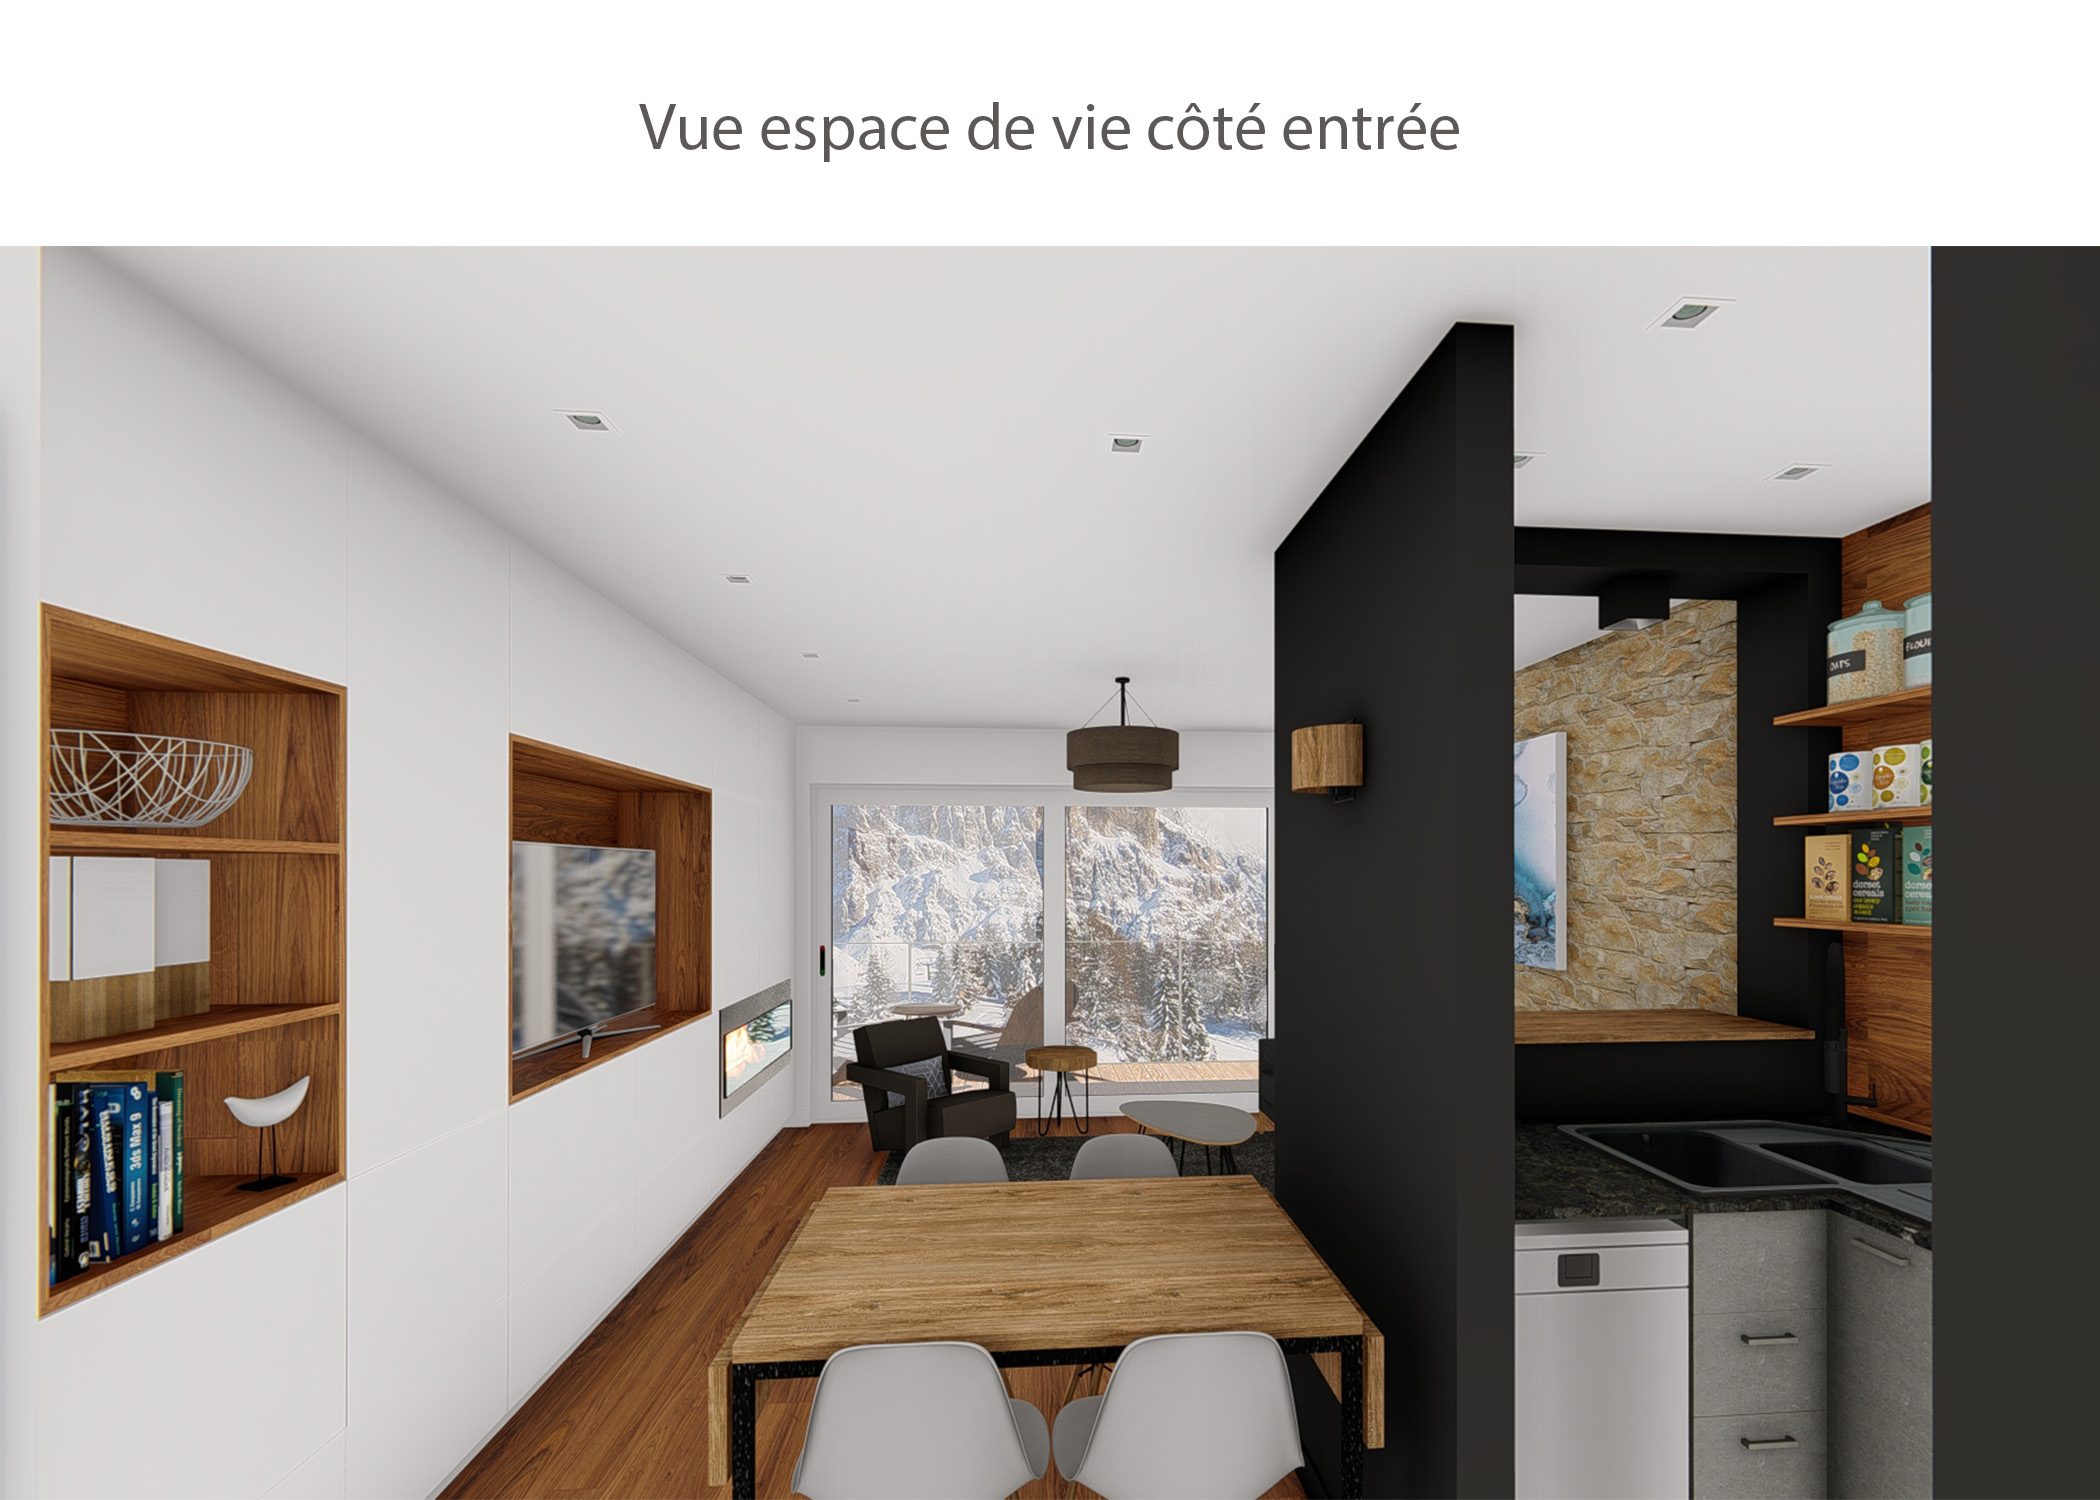 amenagement-decoration-appartement-montagne-italie-espace de vie cote entree-dekho design